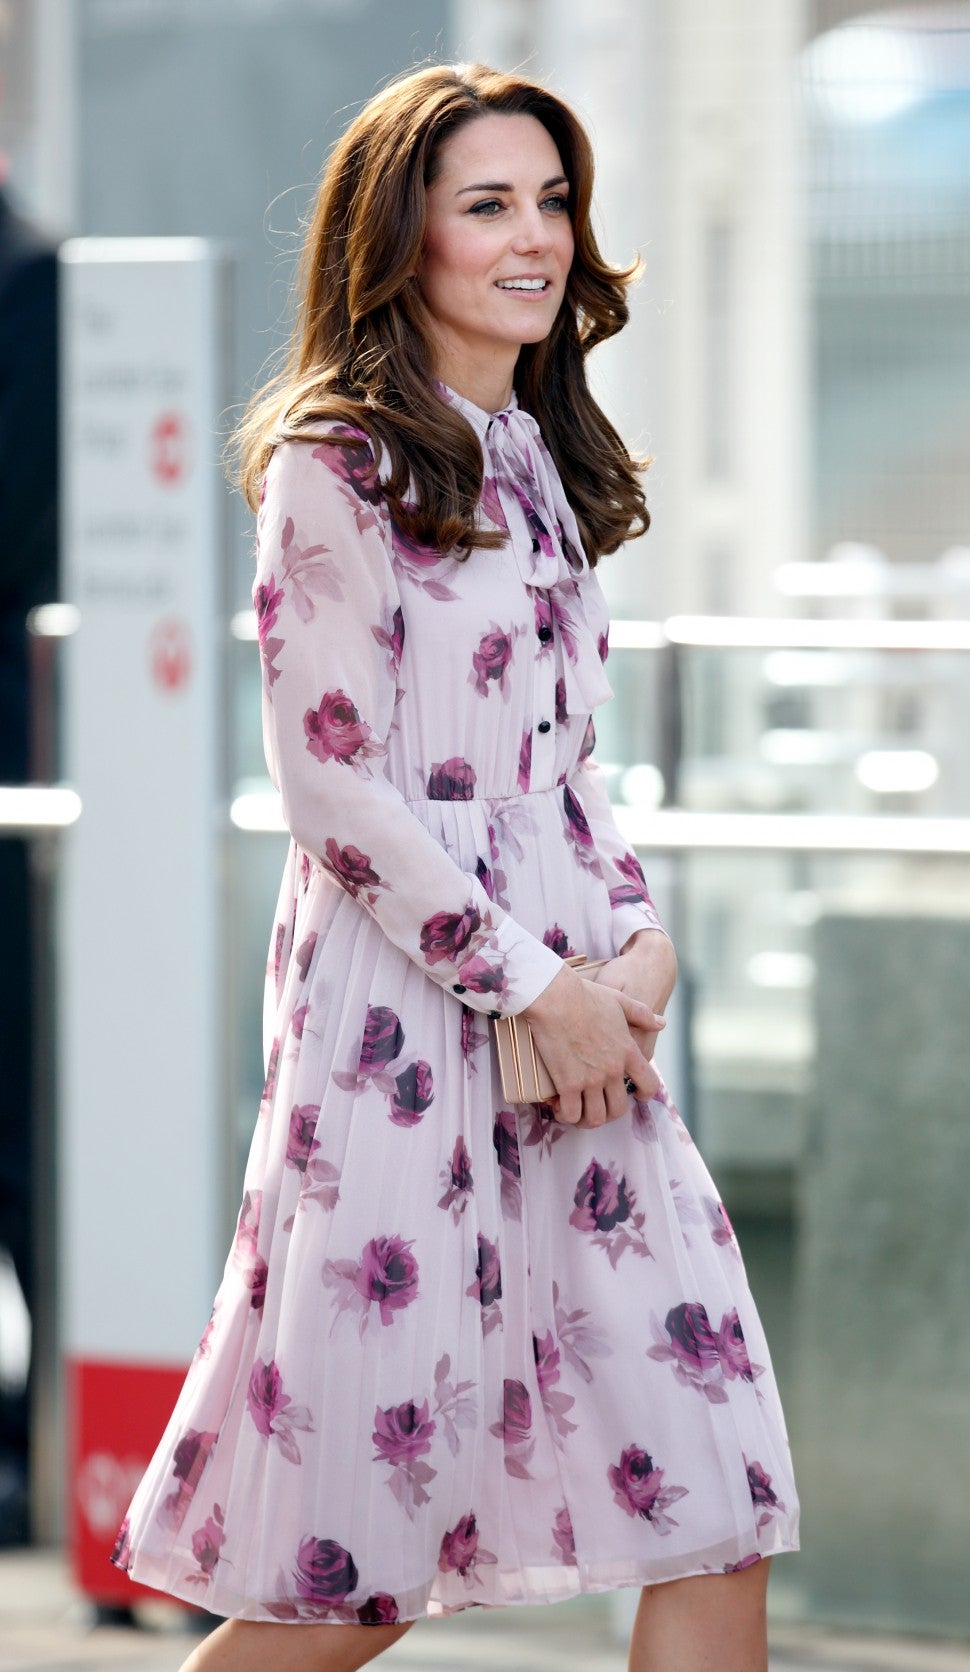 Kate Middleton wearing Kate Spade.